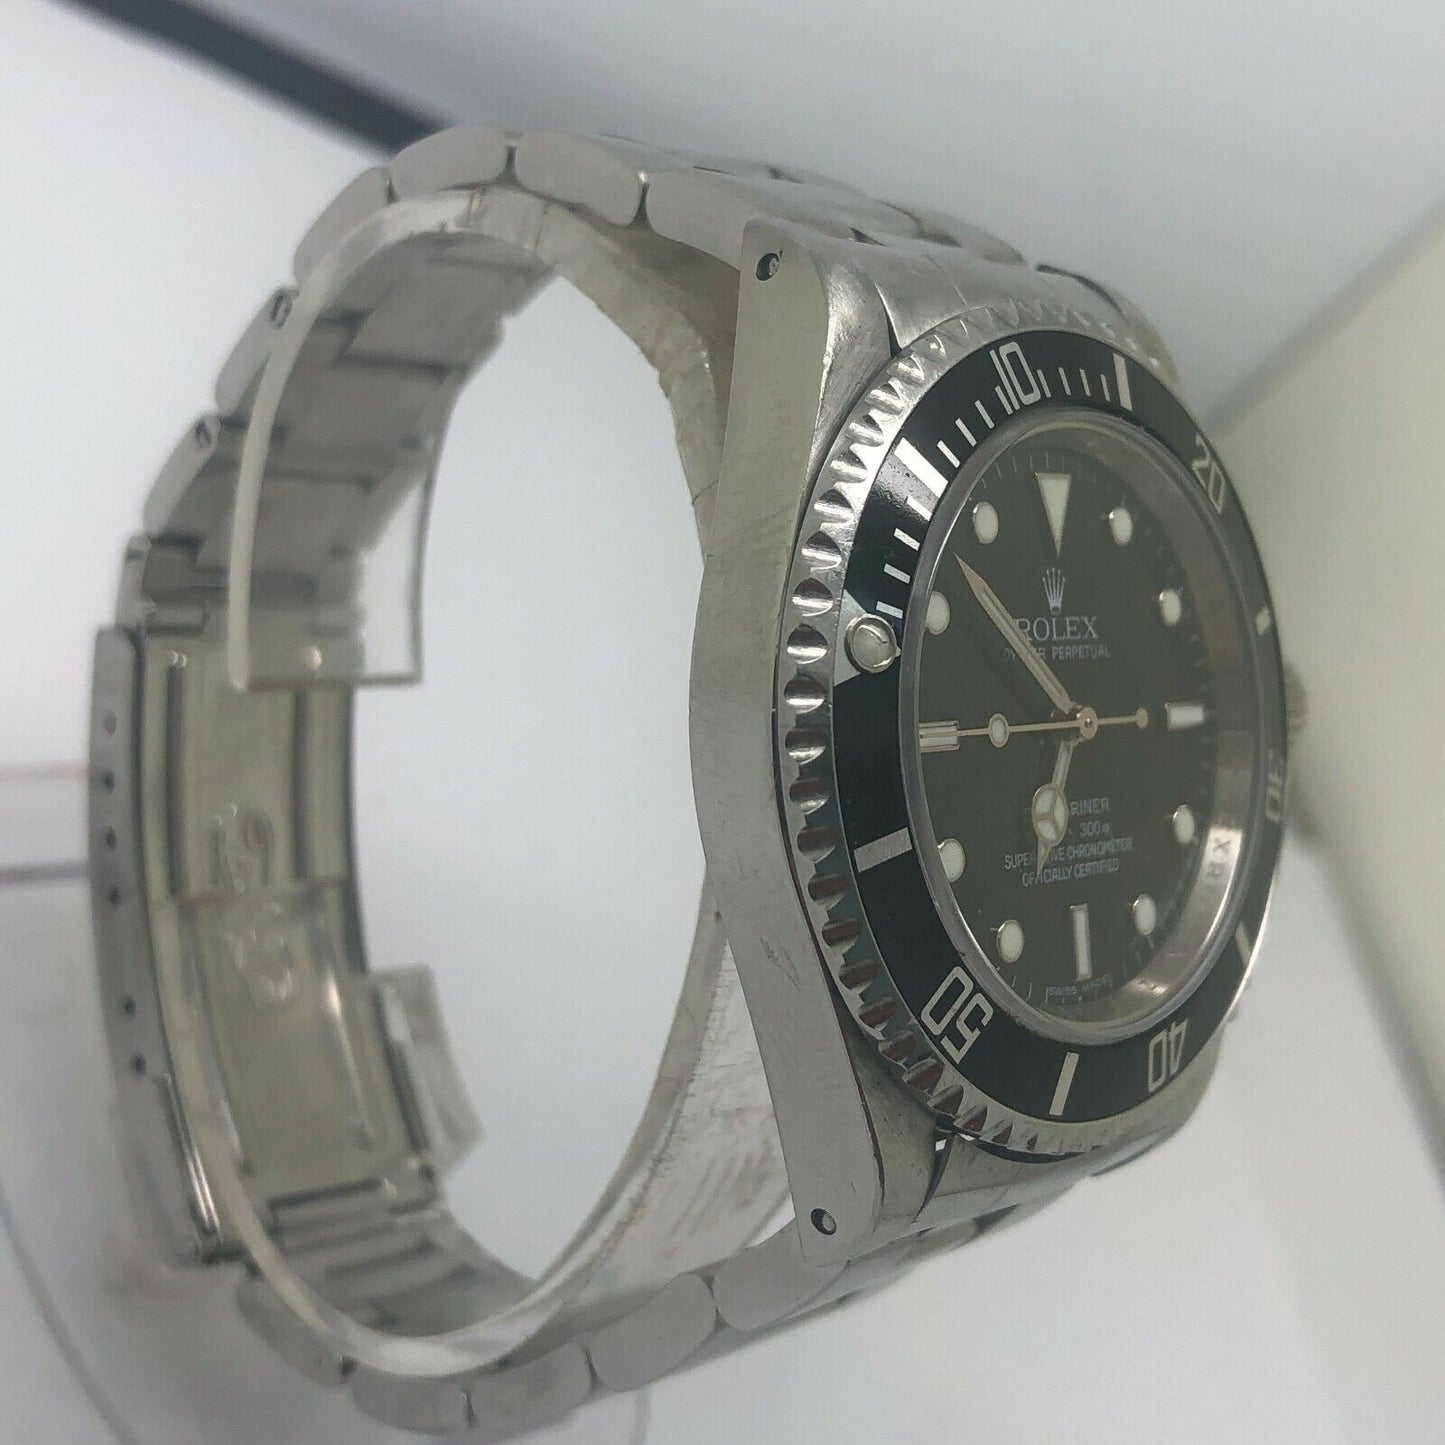 Rolex Submariner Men's Black Watch - 14060M